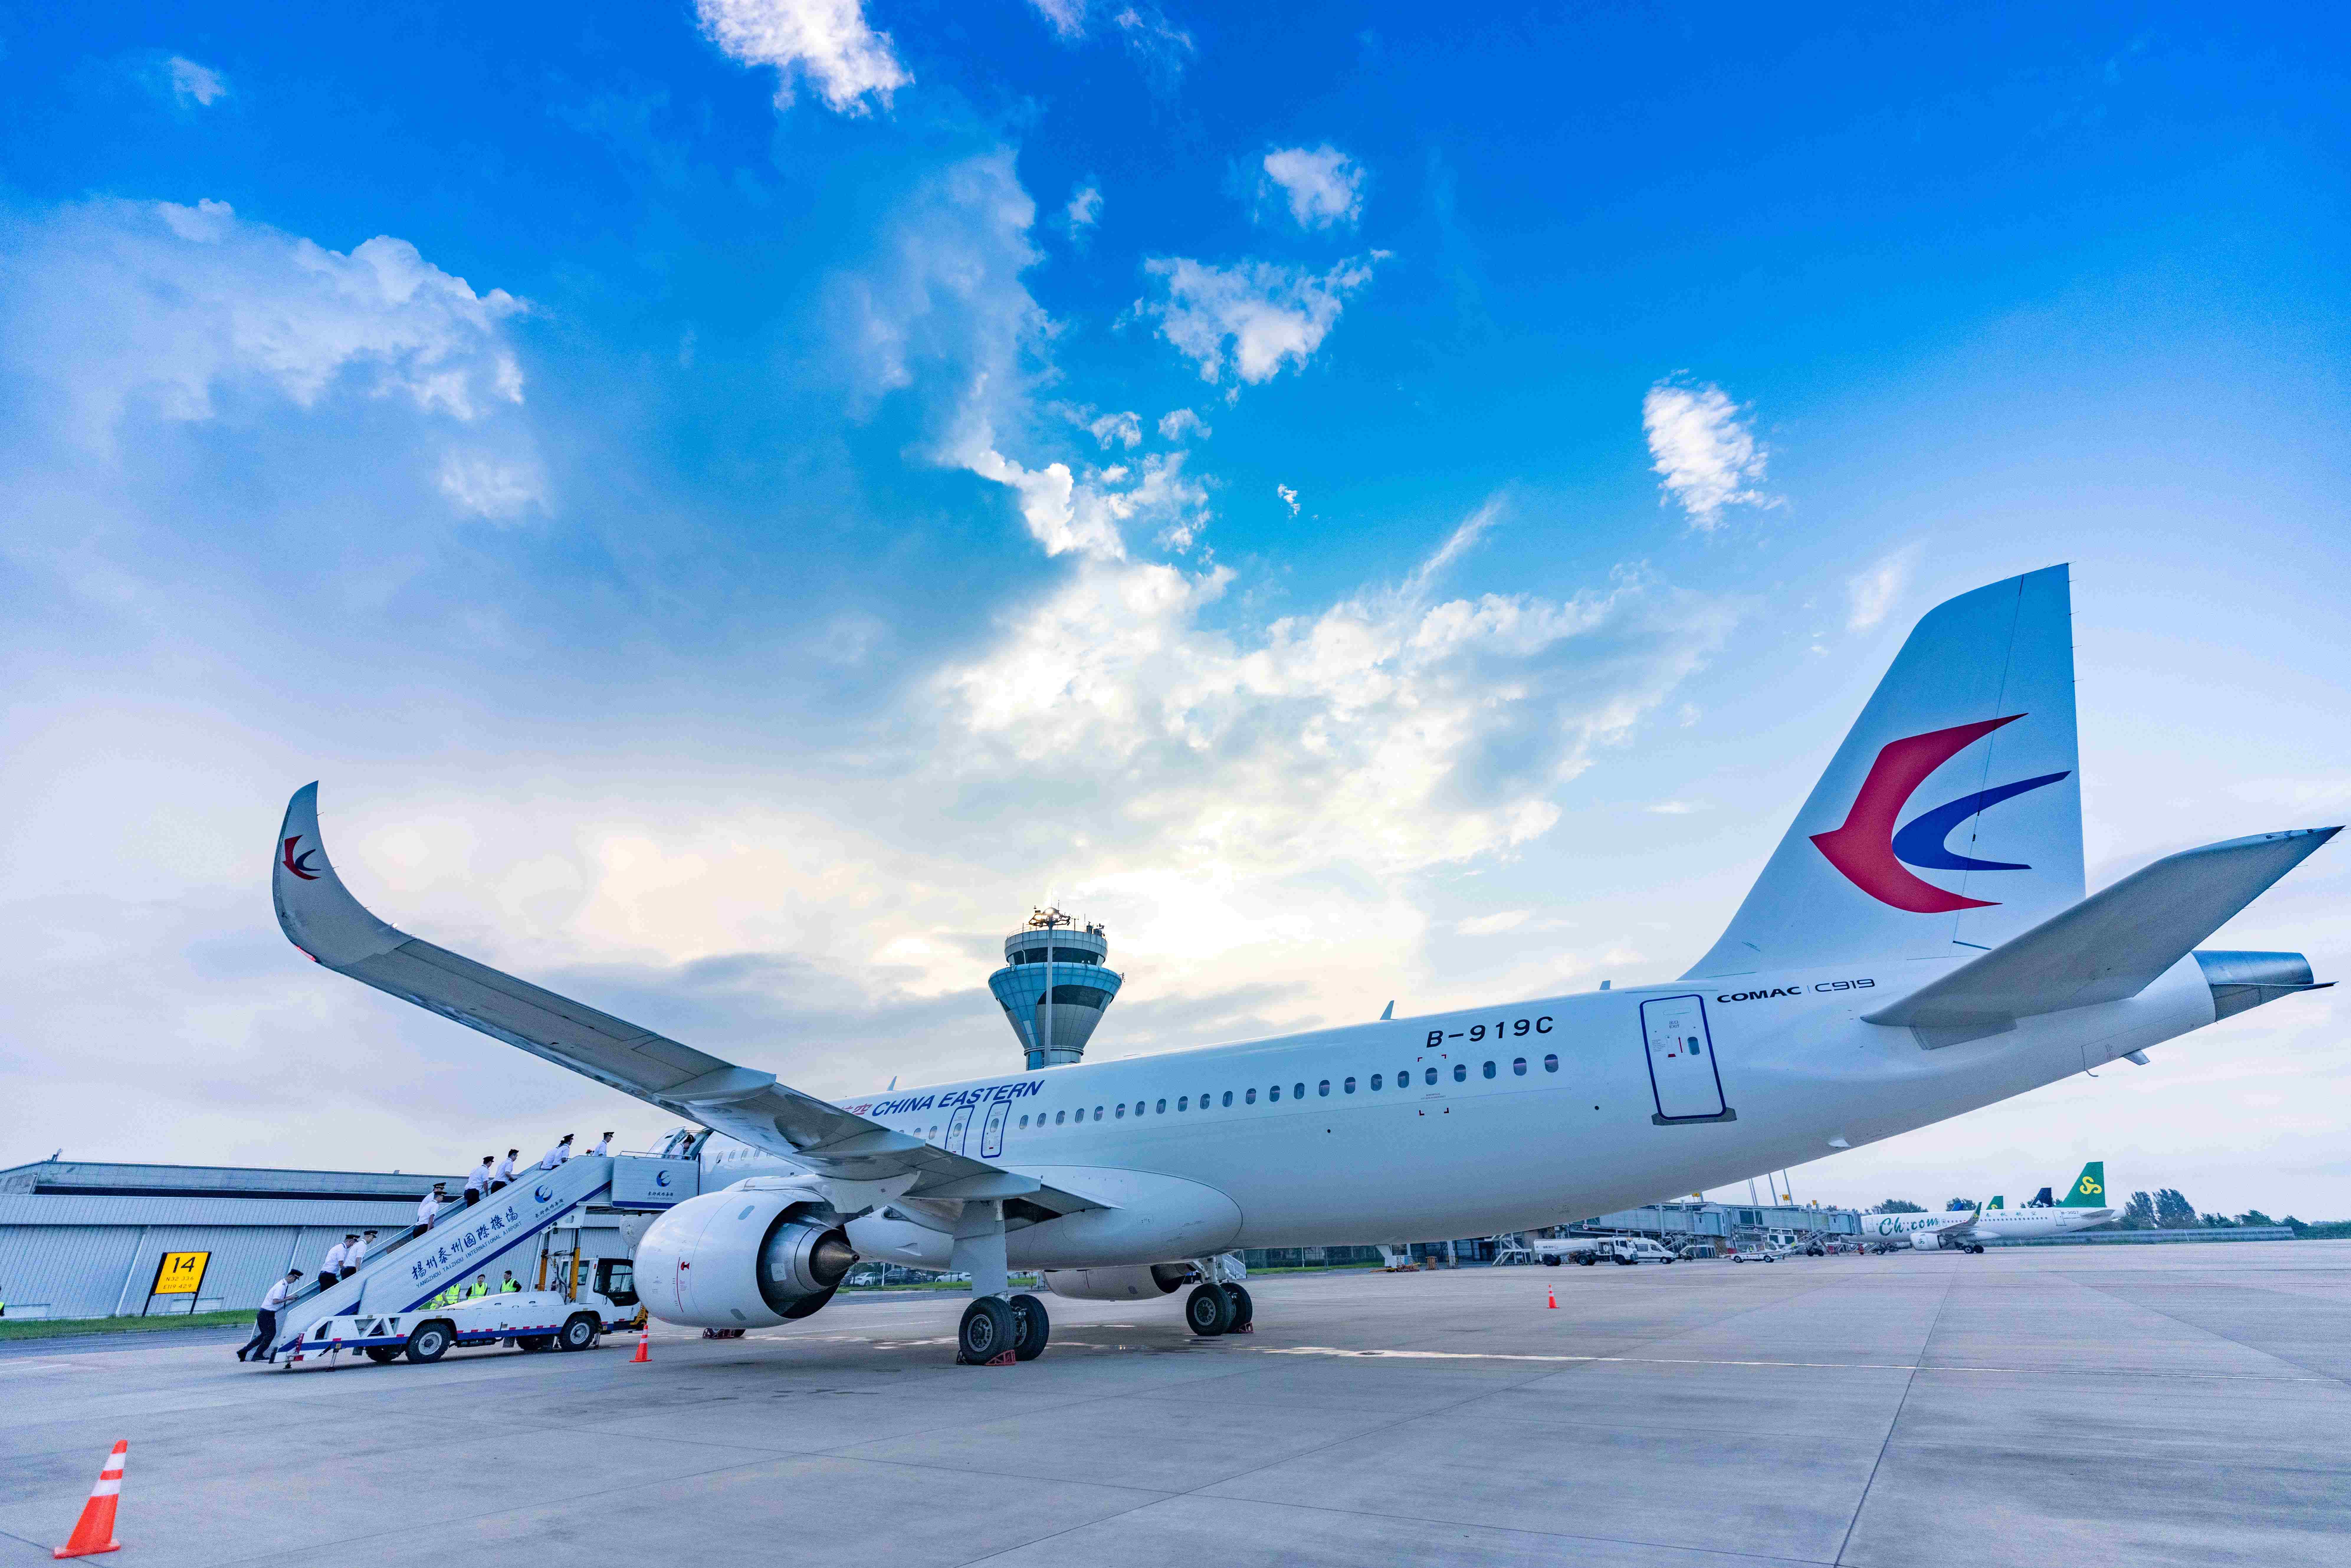 17 يوليو 2023، وصول ثاني طائرة ركاب كبيرة من طراز C919 صينية الصنع إلى مطار يانغتشو- تاي تشو الدولي. يو شينغ / صورة الشعب